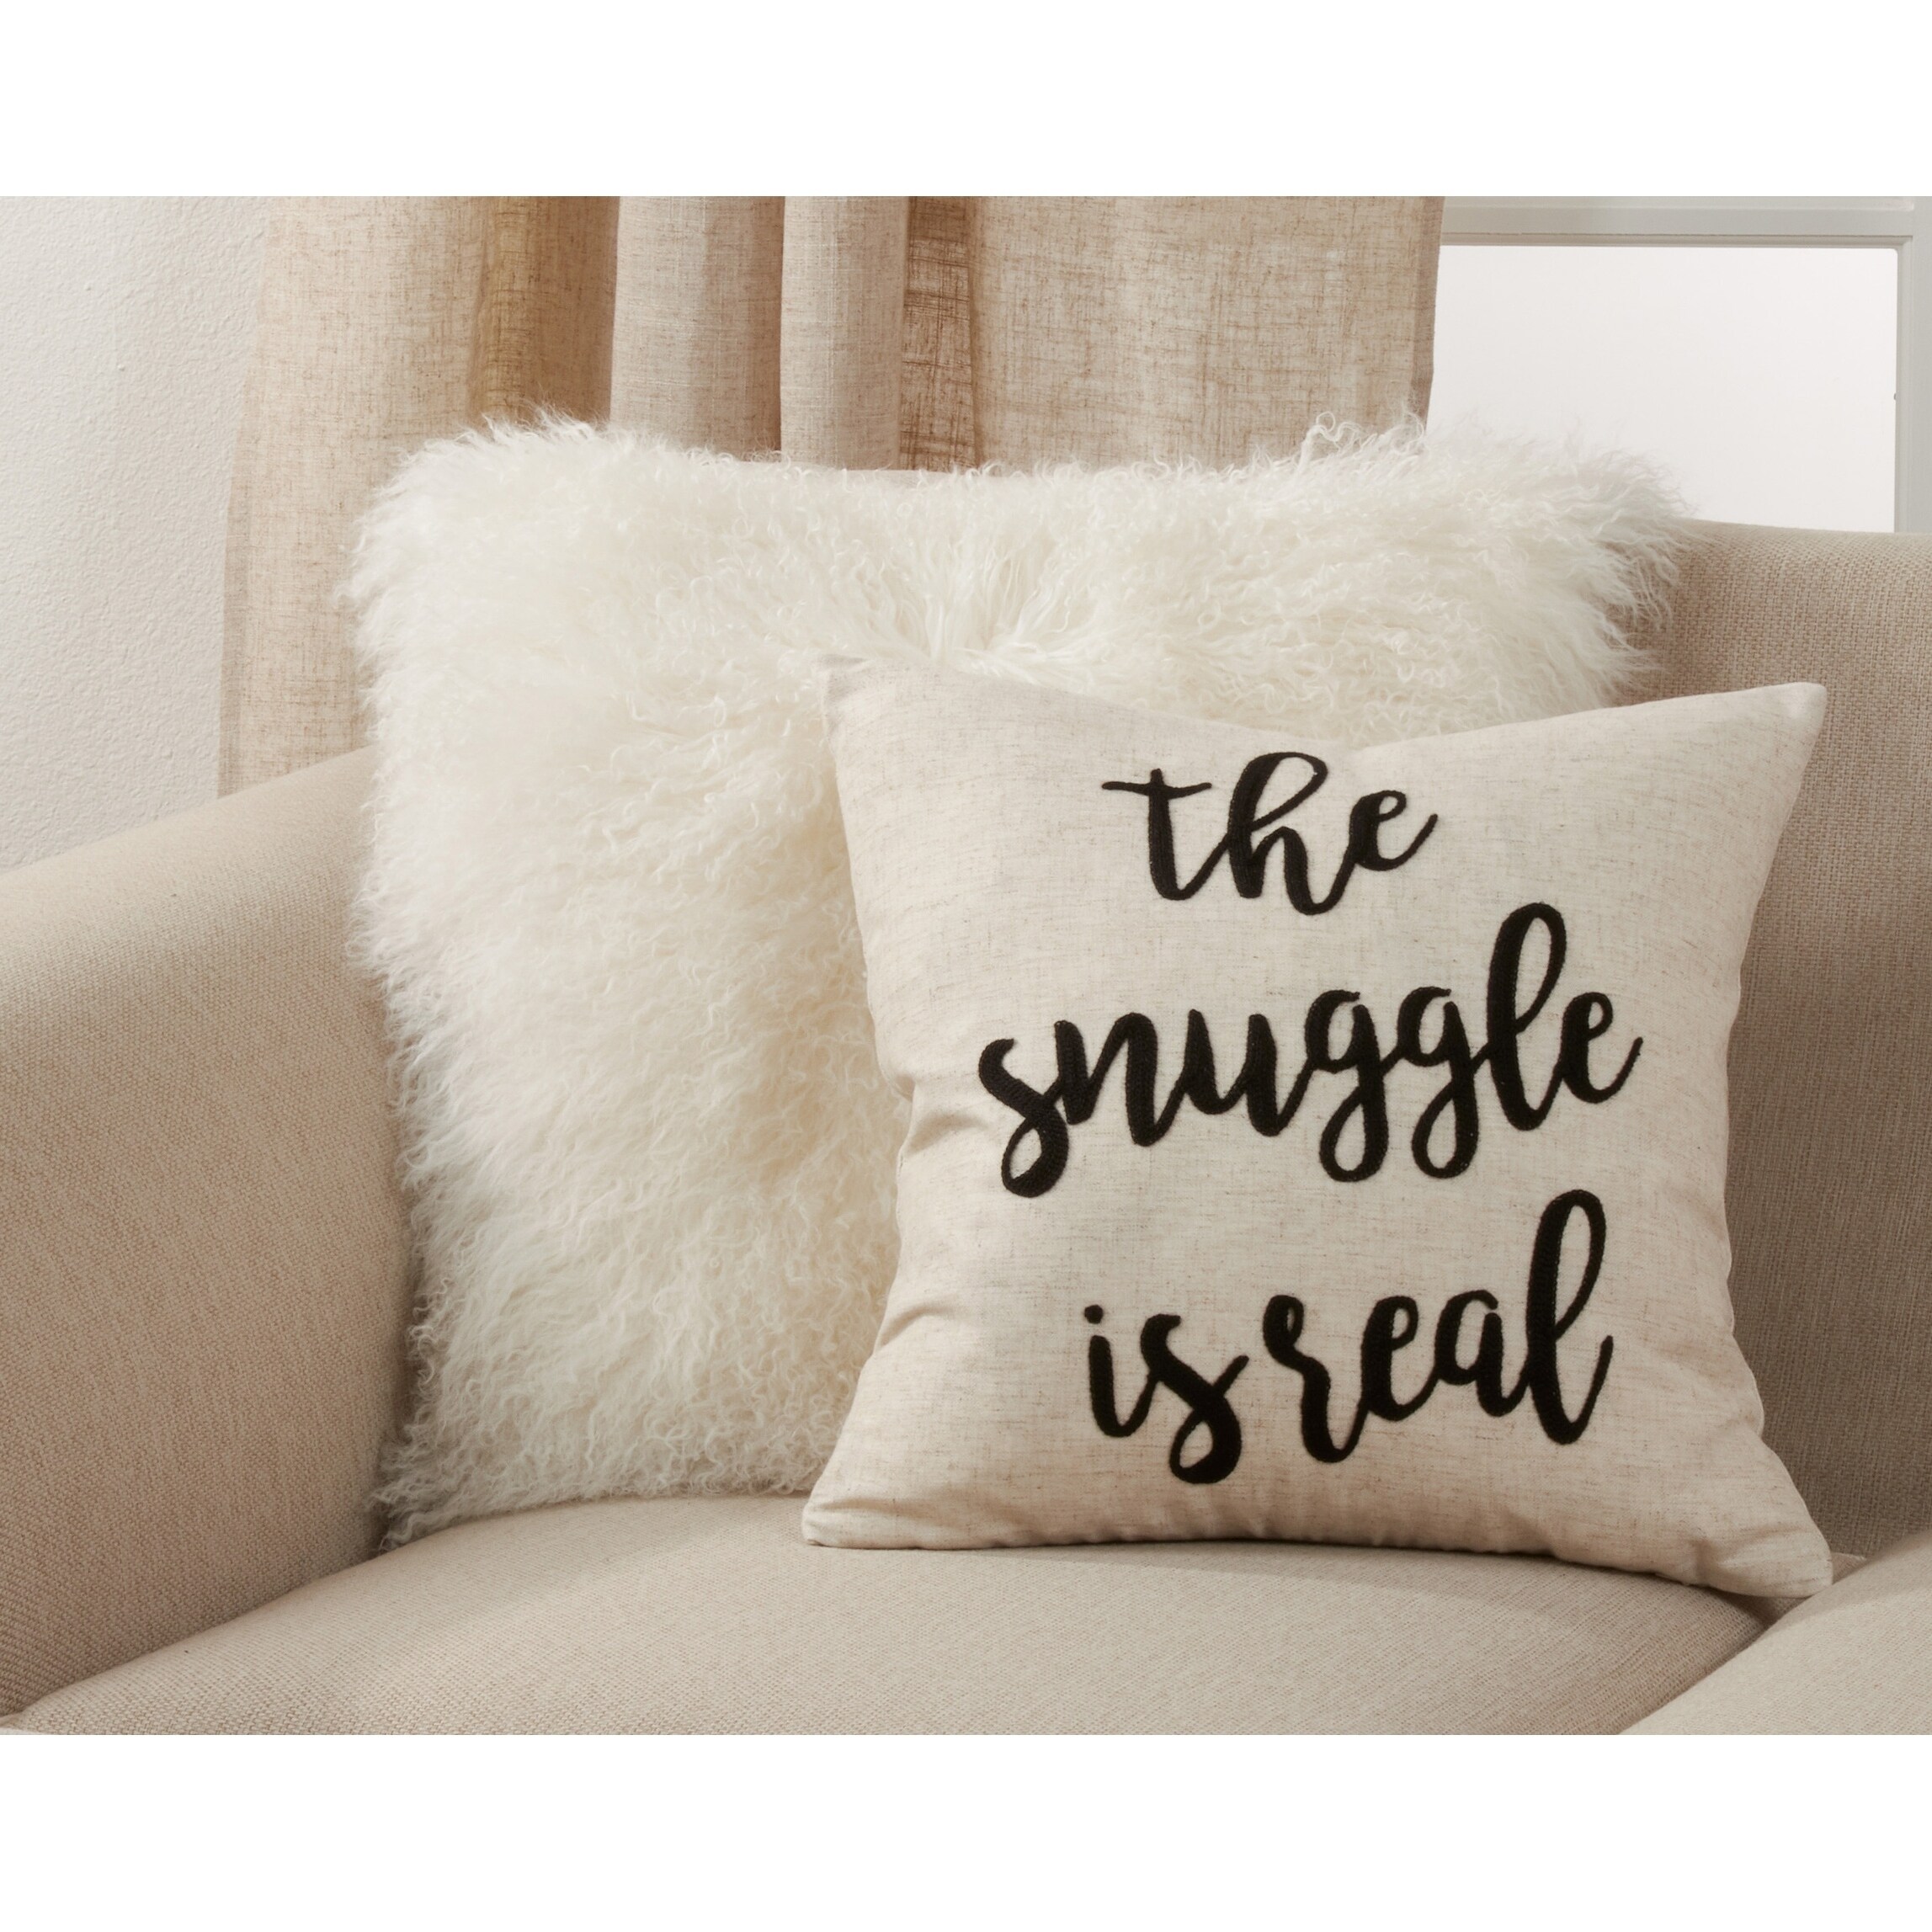 snuggle pillow